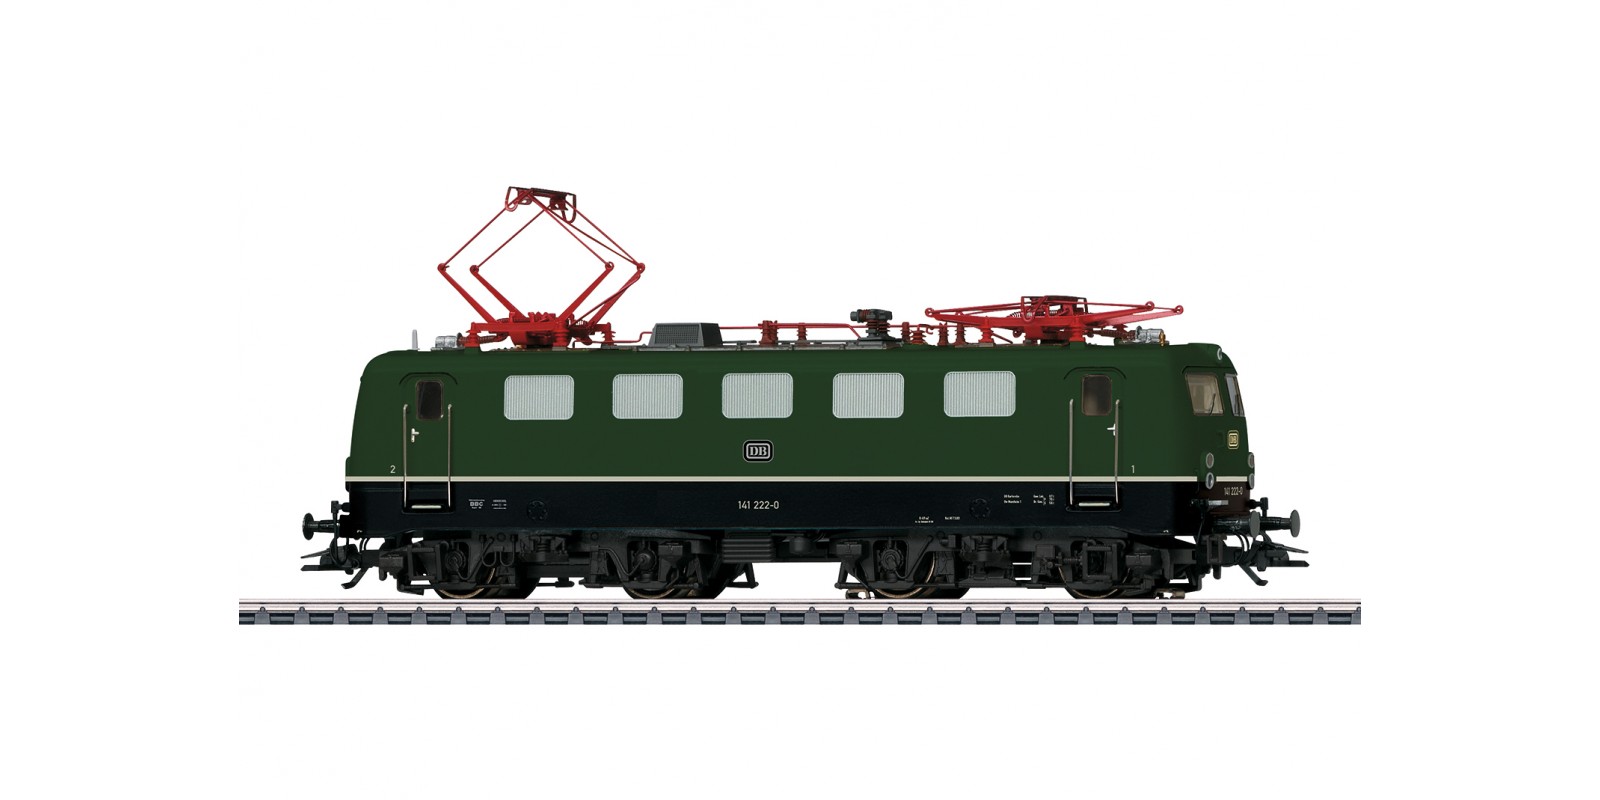 39470 Class 141 Electric Locomotive